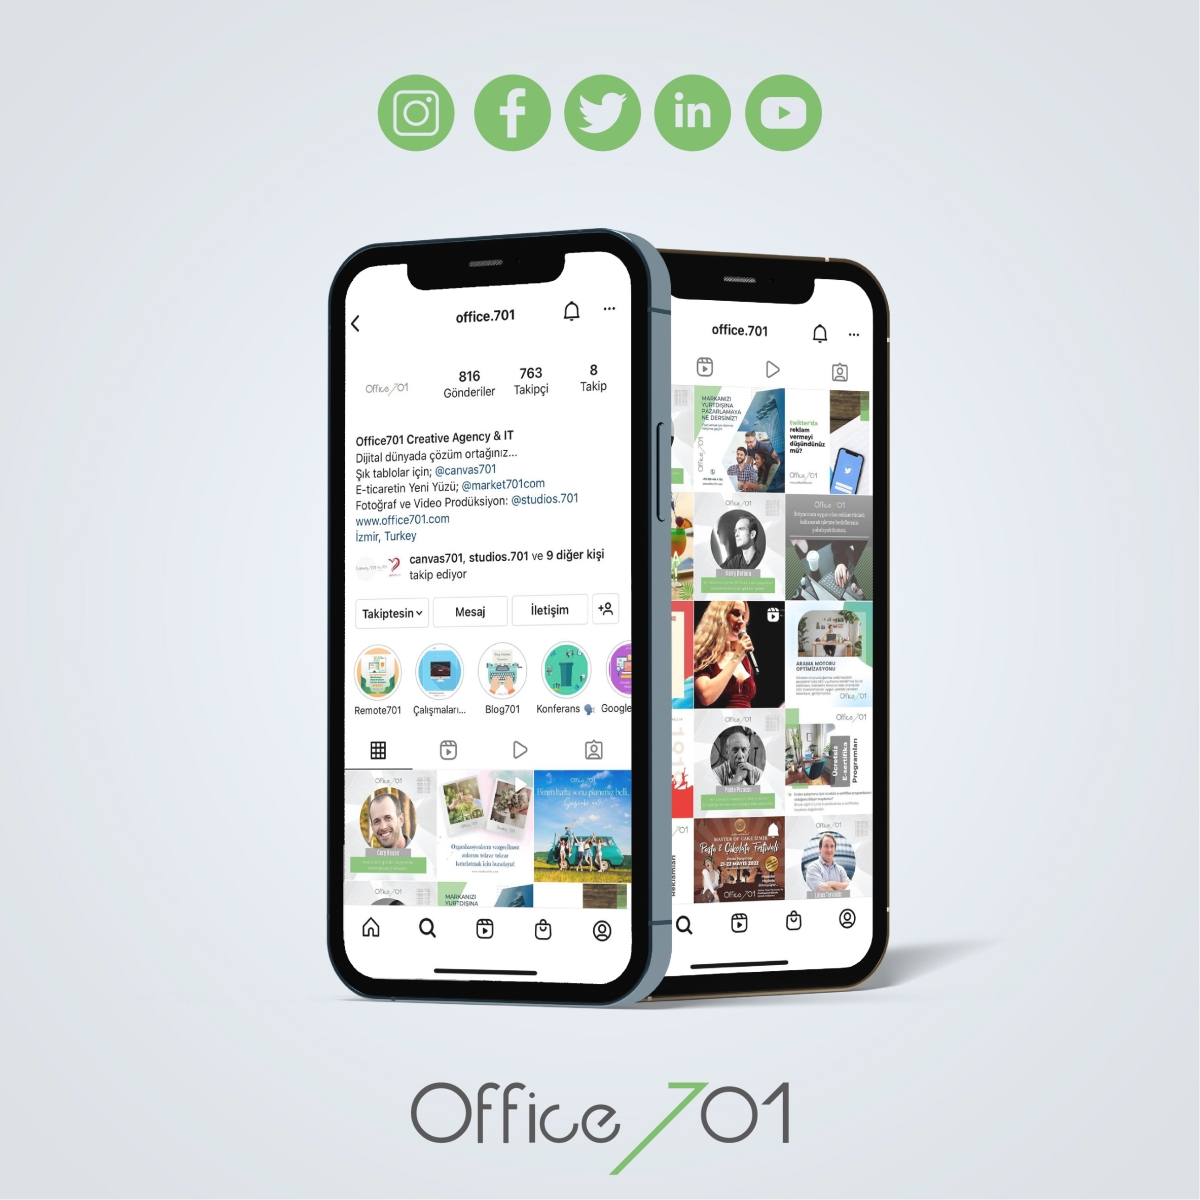 Office701 | Office701 | Social Media Management